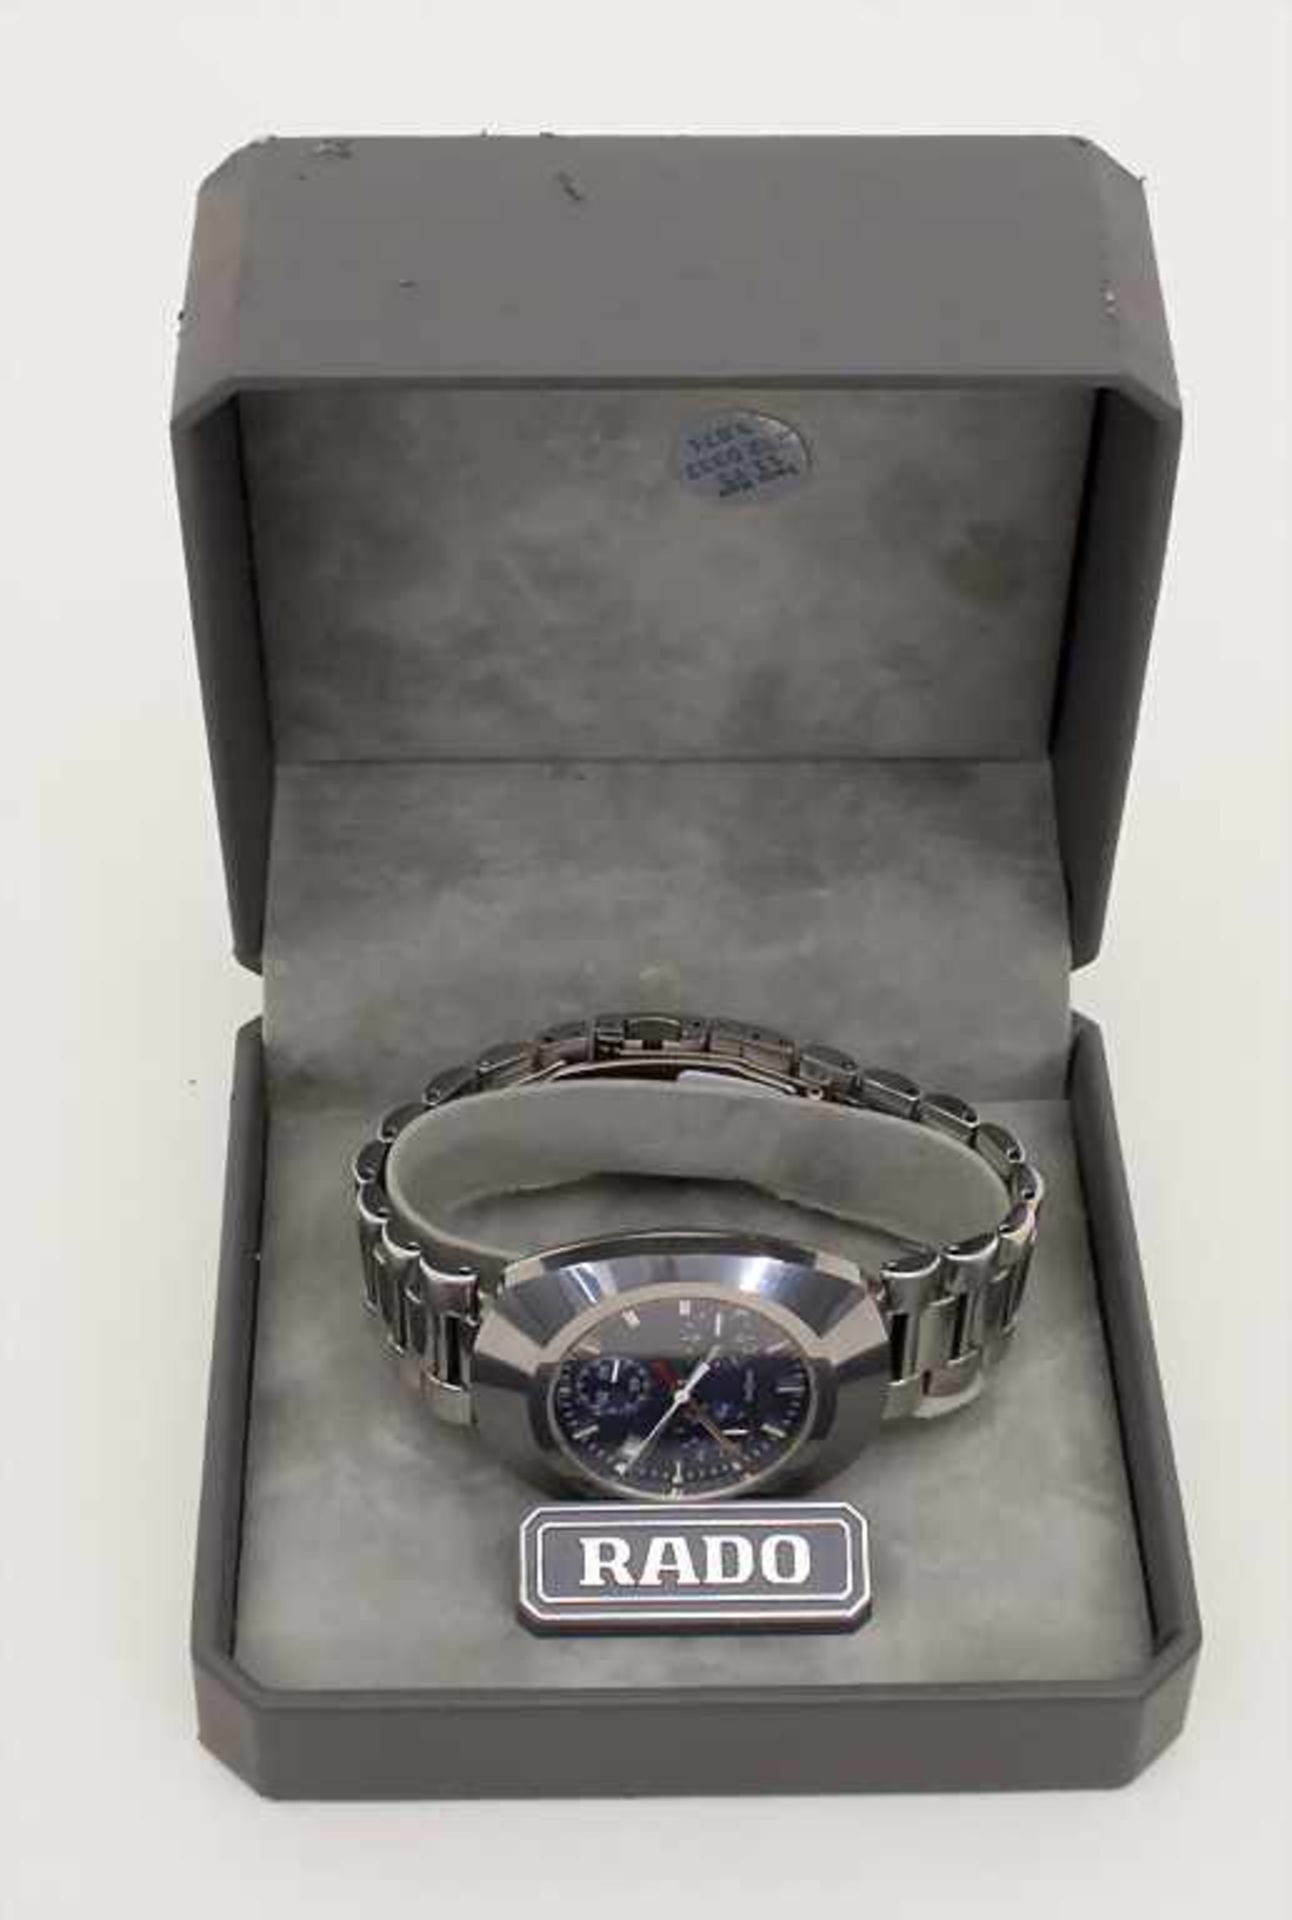 Herrenarmbanduhr / A men's watch, Rado DiaStar Chronograph, Swiss/SchweizHersteller: RADO, - Bild 2 aus 2